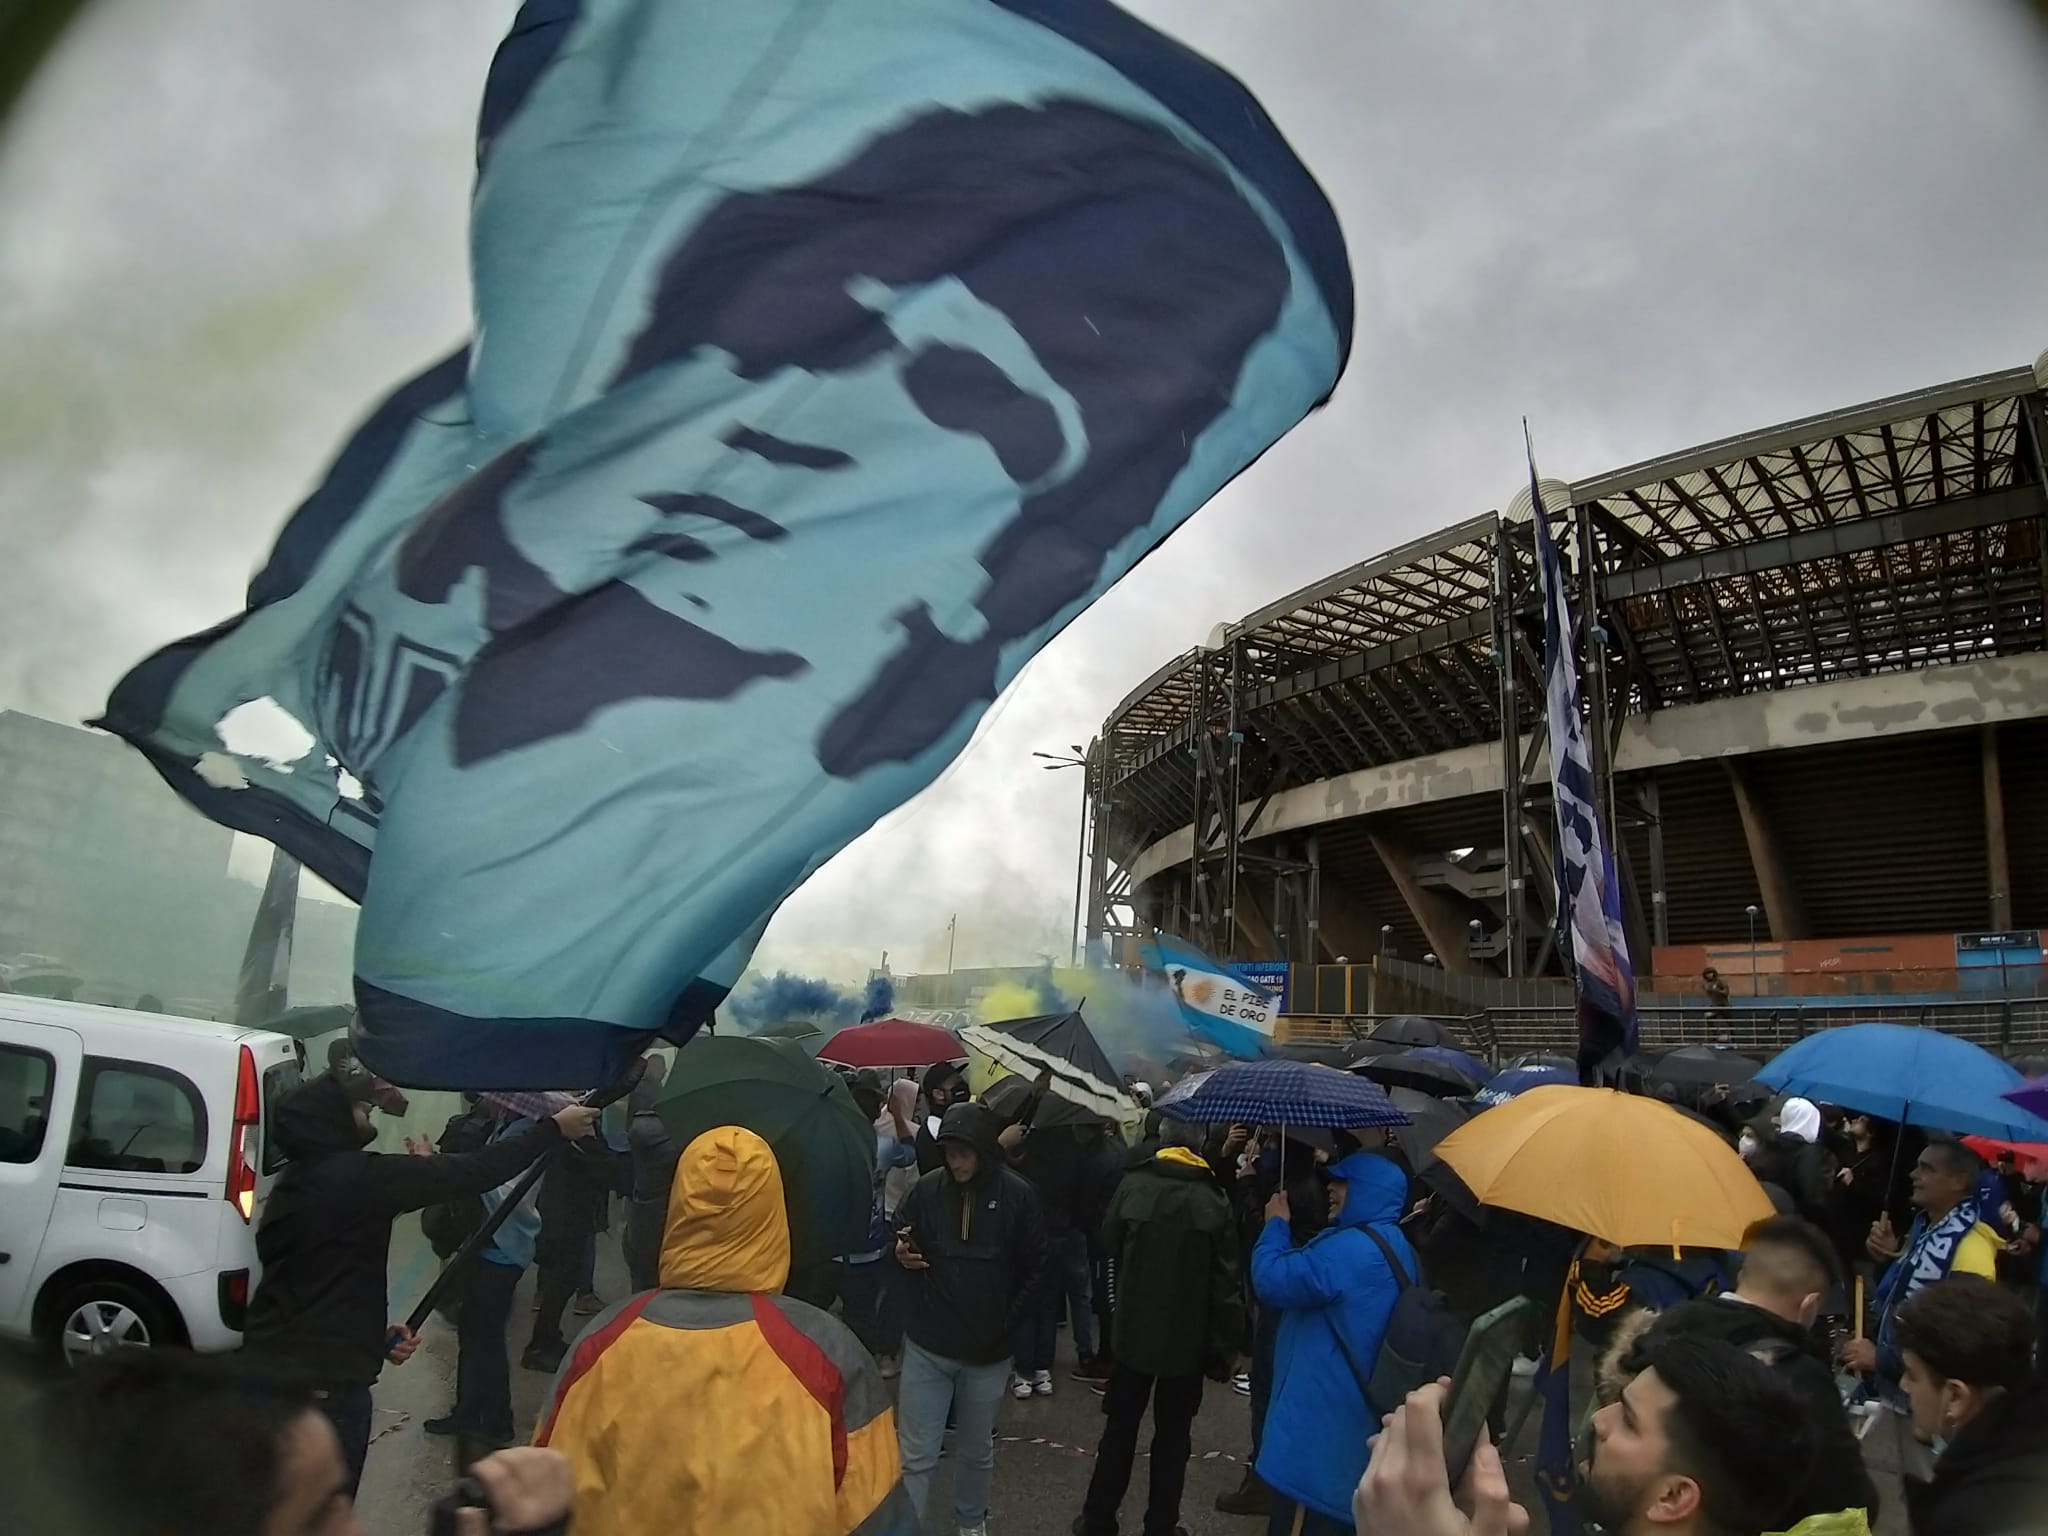 Gli Ultras ricordano Diego: "Puortete 'na torcia p'ammore 'e Maradona. Il 10 è del popolo!"